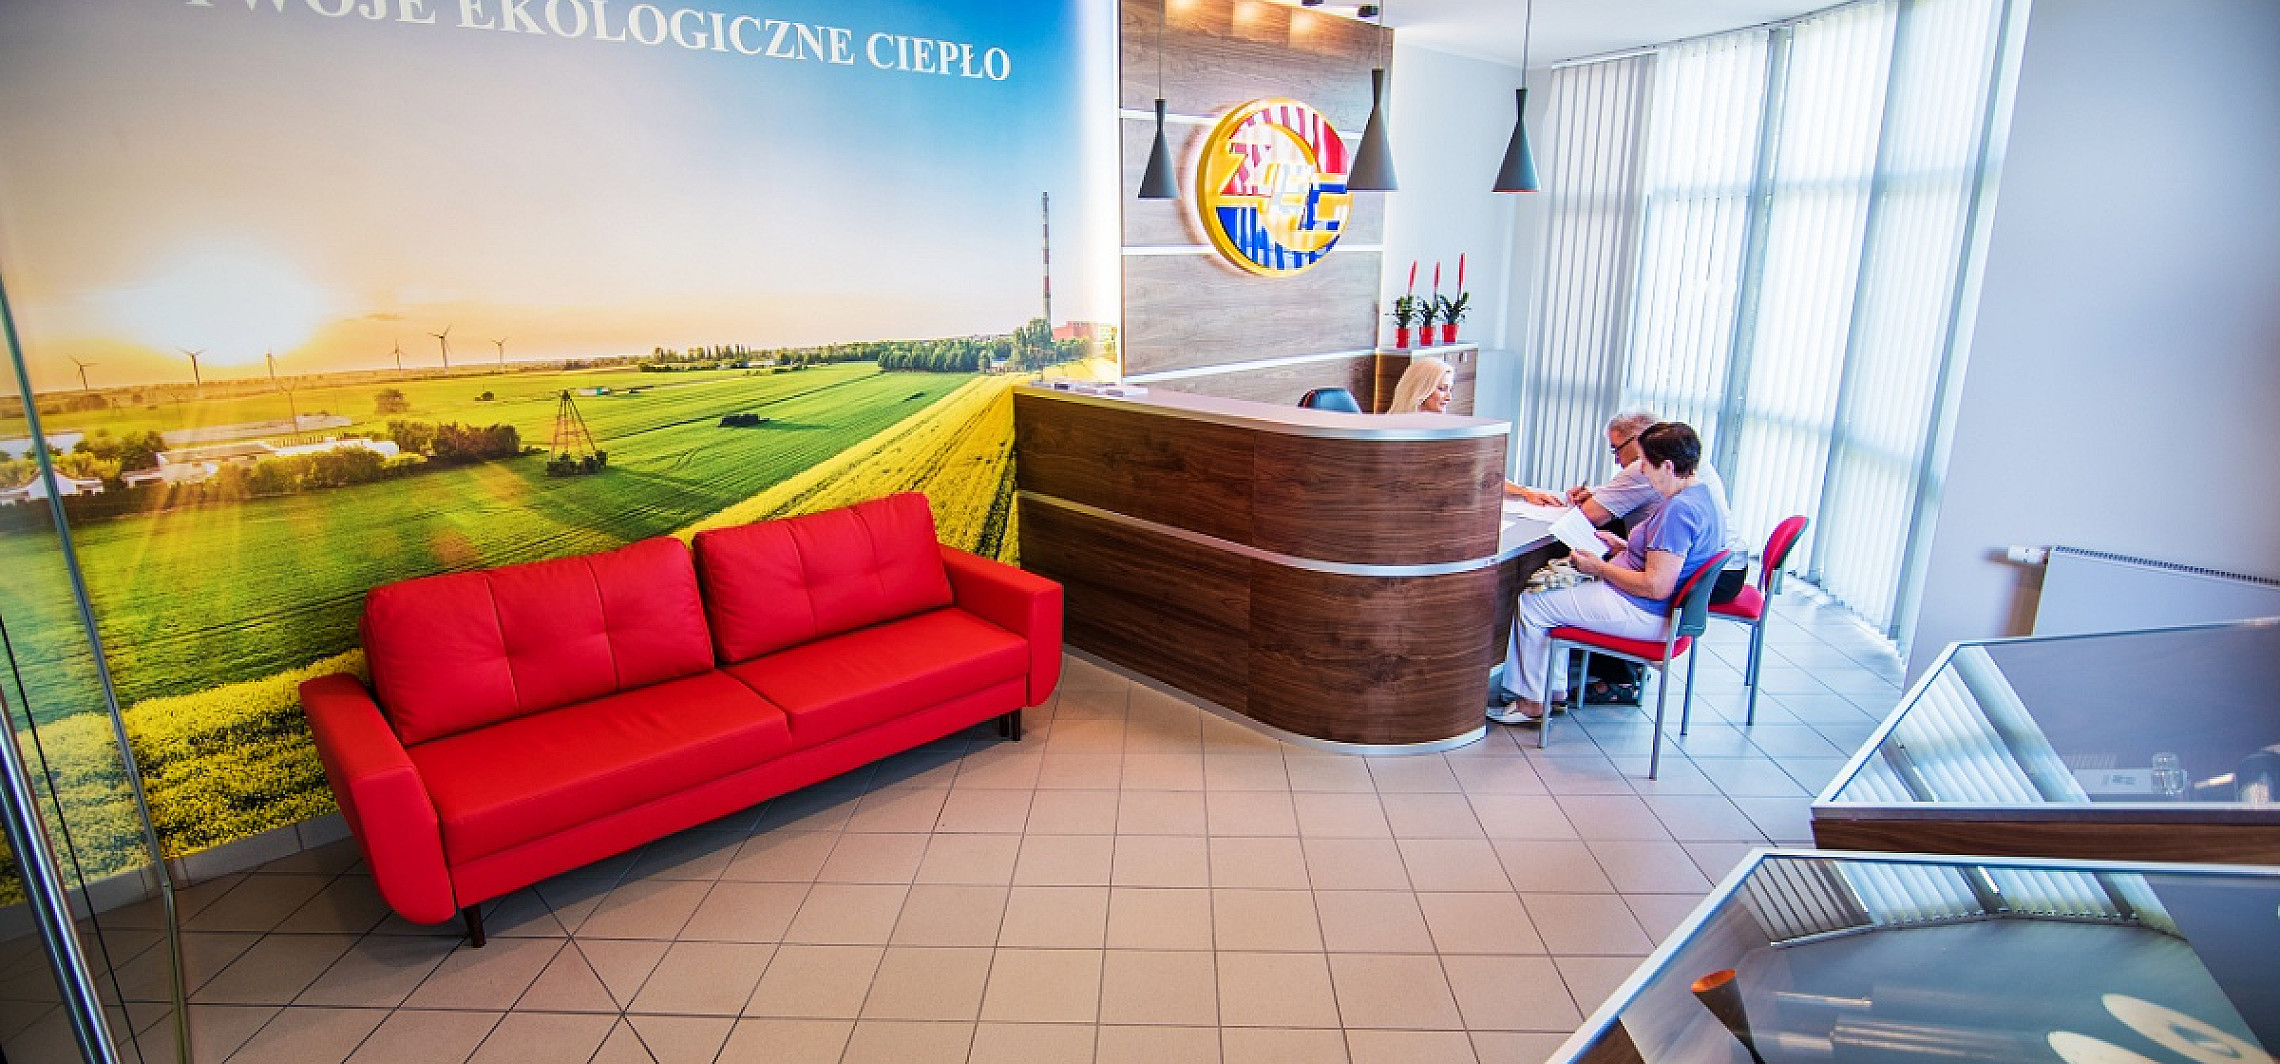 Inowrocław - ZEC z nowym biurem obsługi klienta